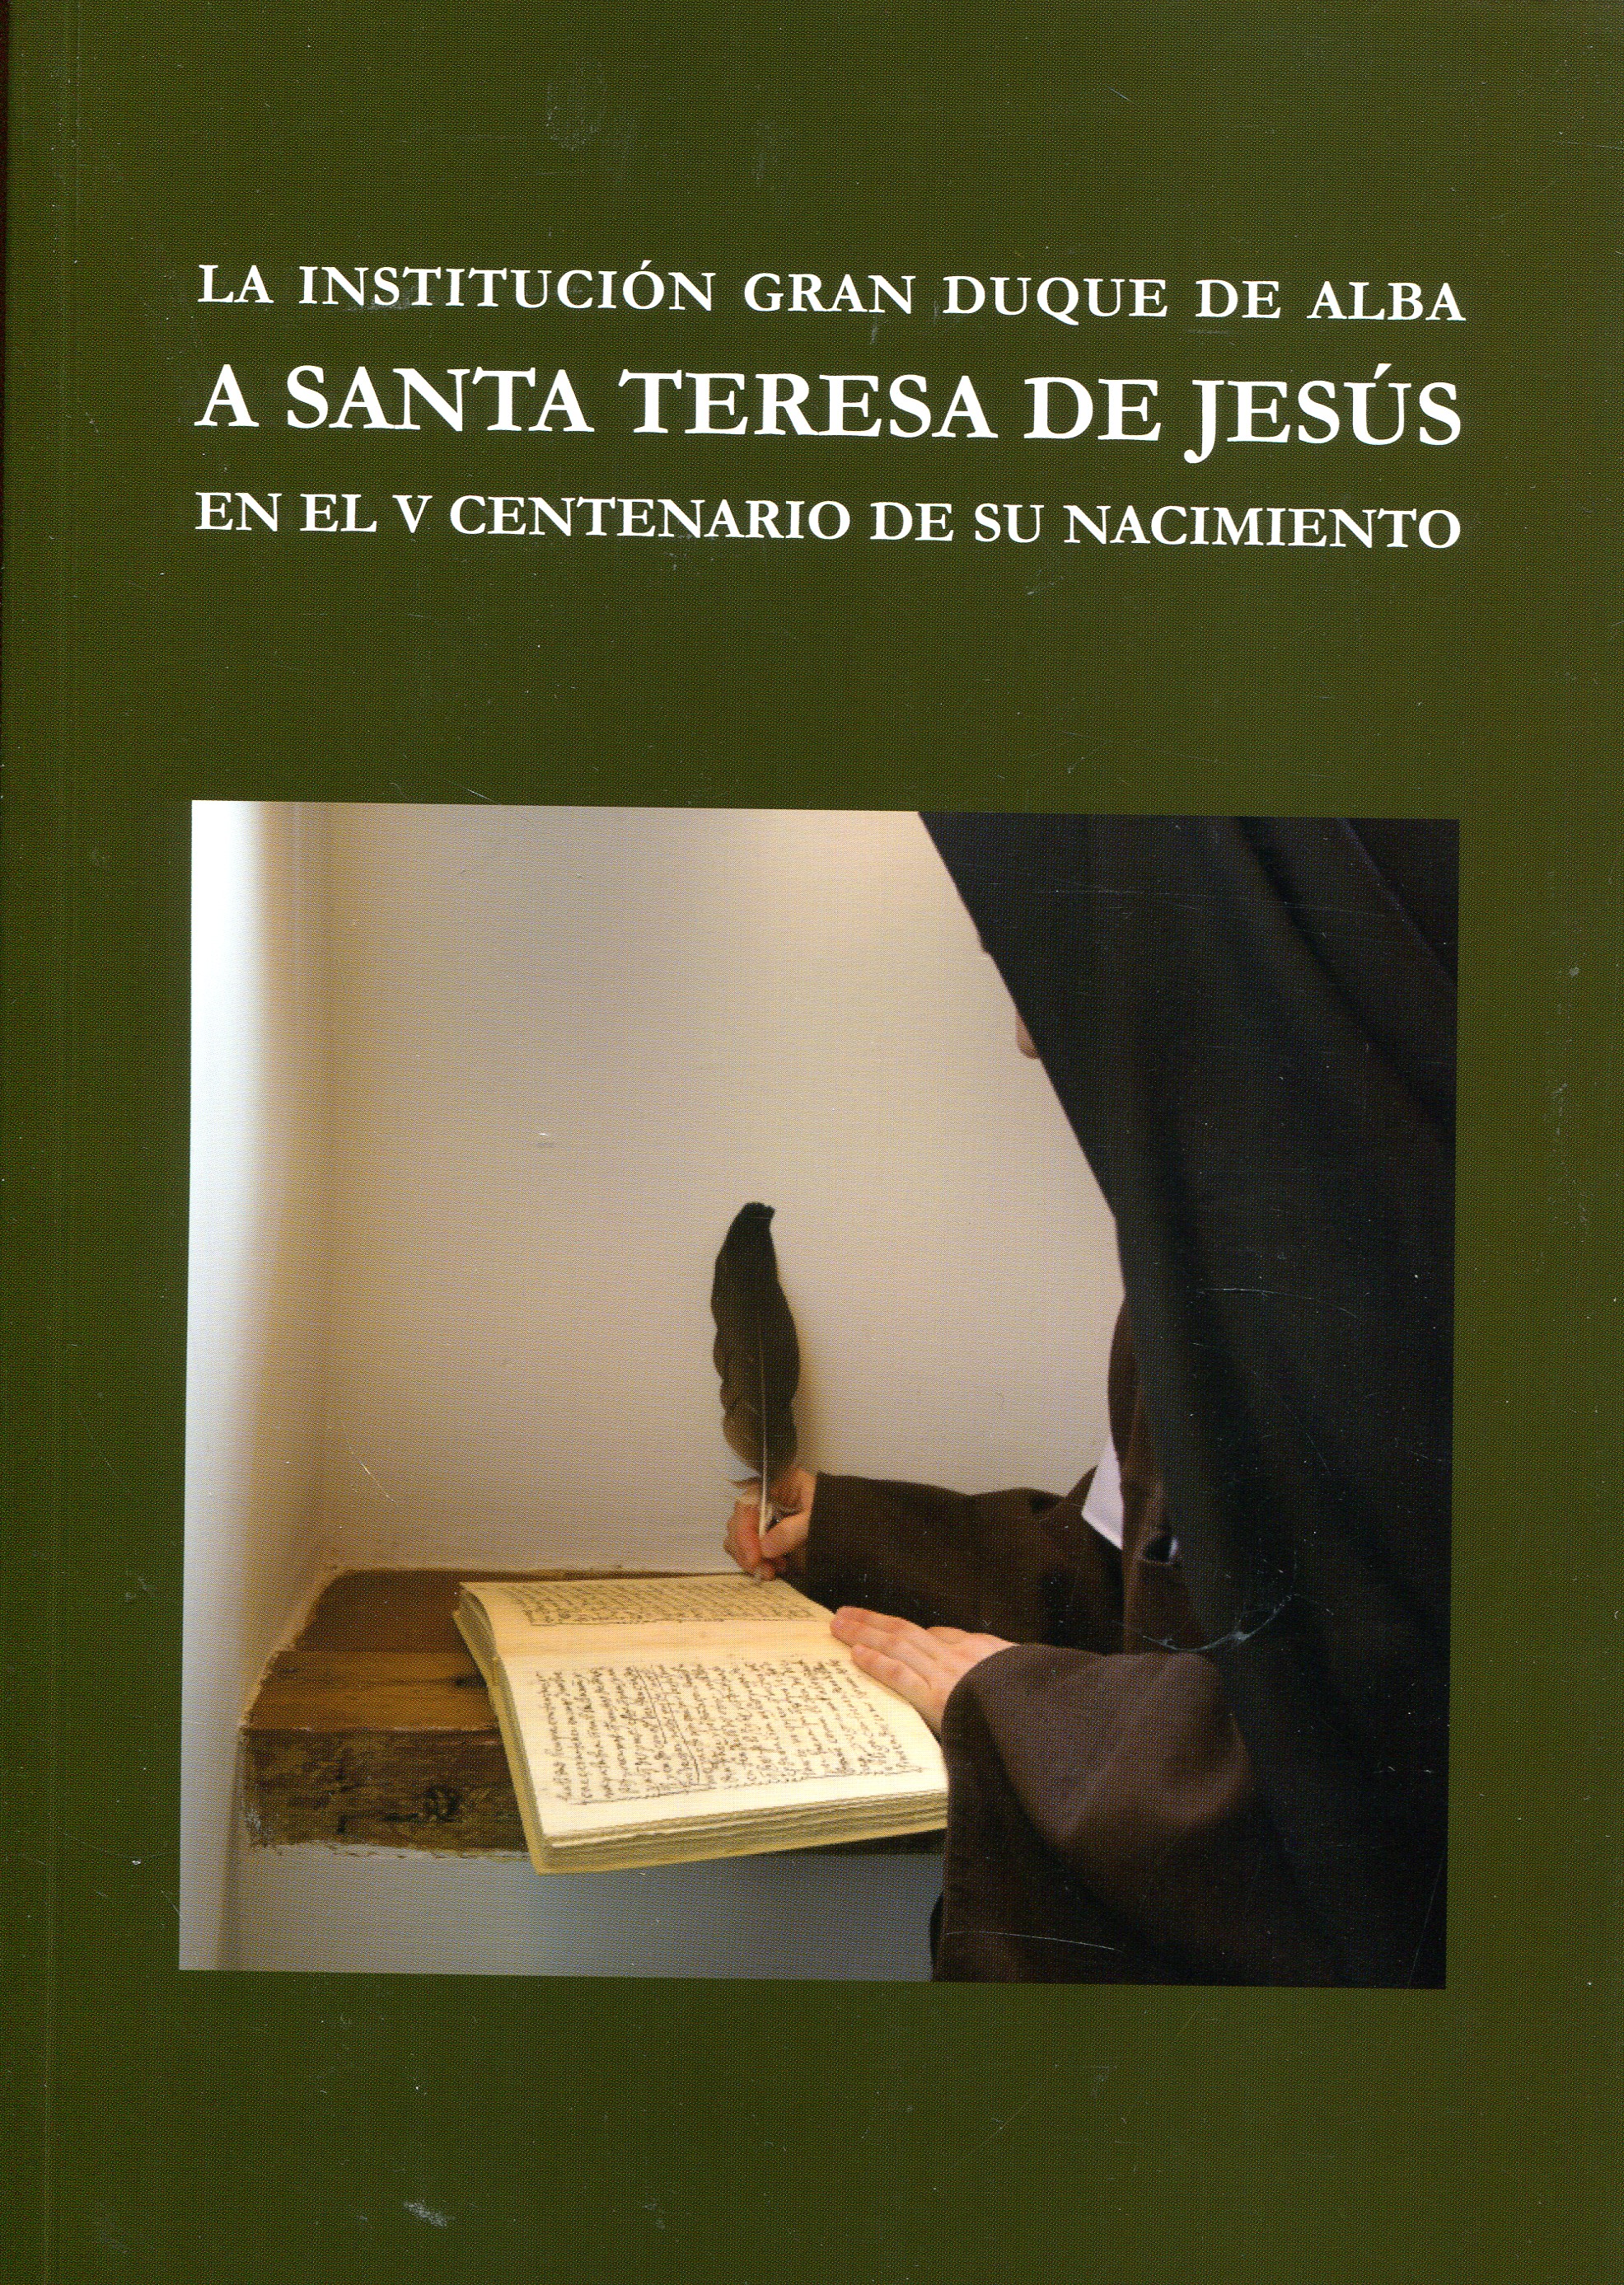 Imagen de portada del libro La Institución Gran Duque de Alba a Santa Teresa de Jesús en el V centenario de su nacimiento